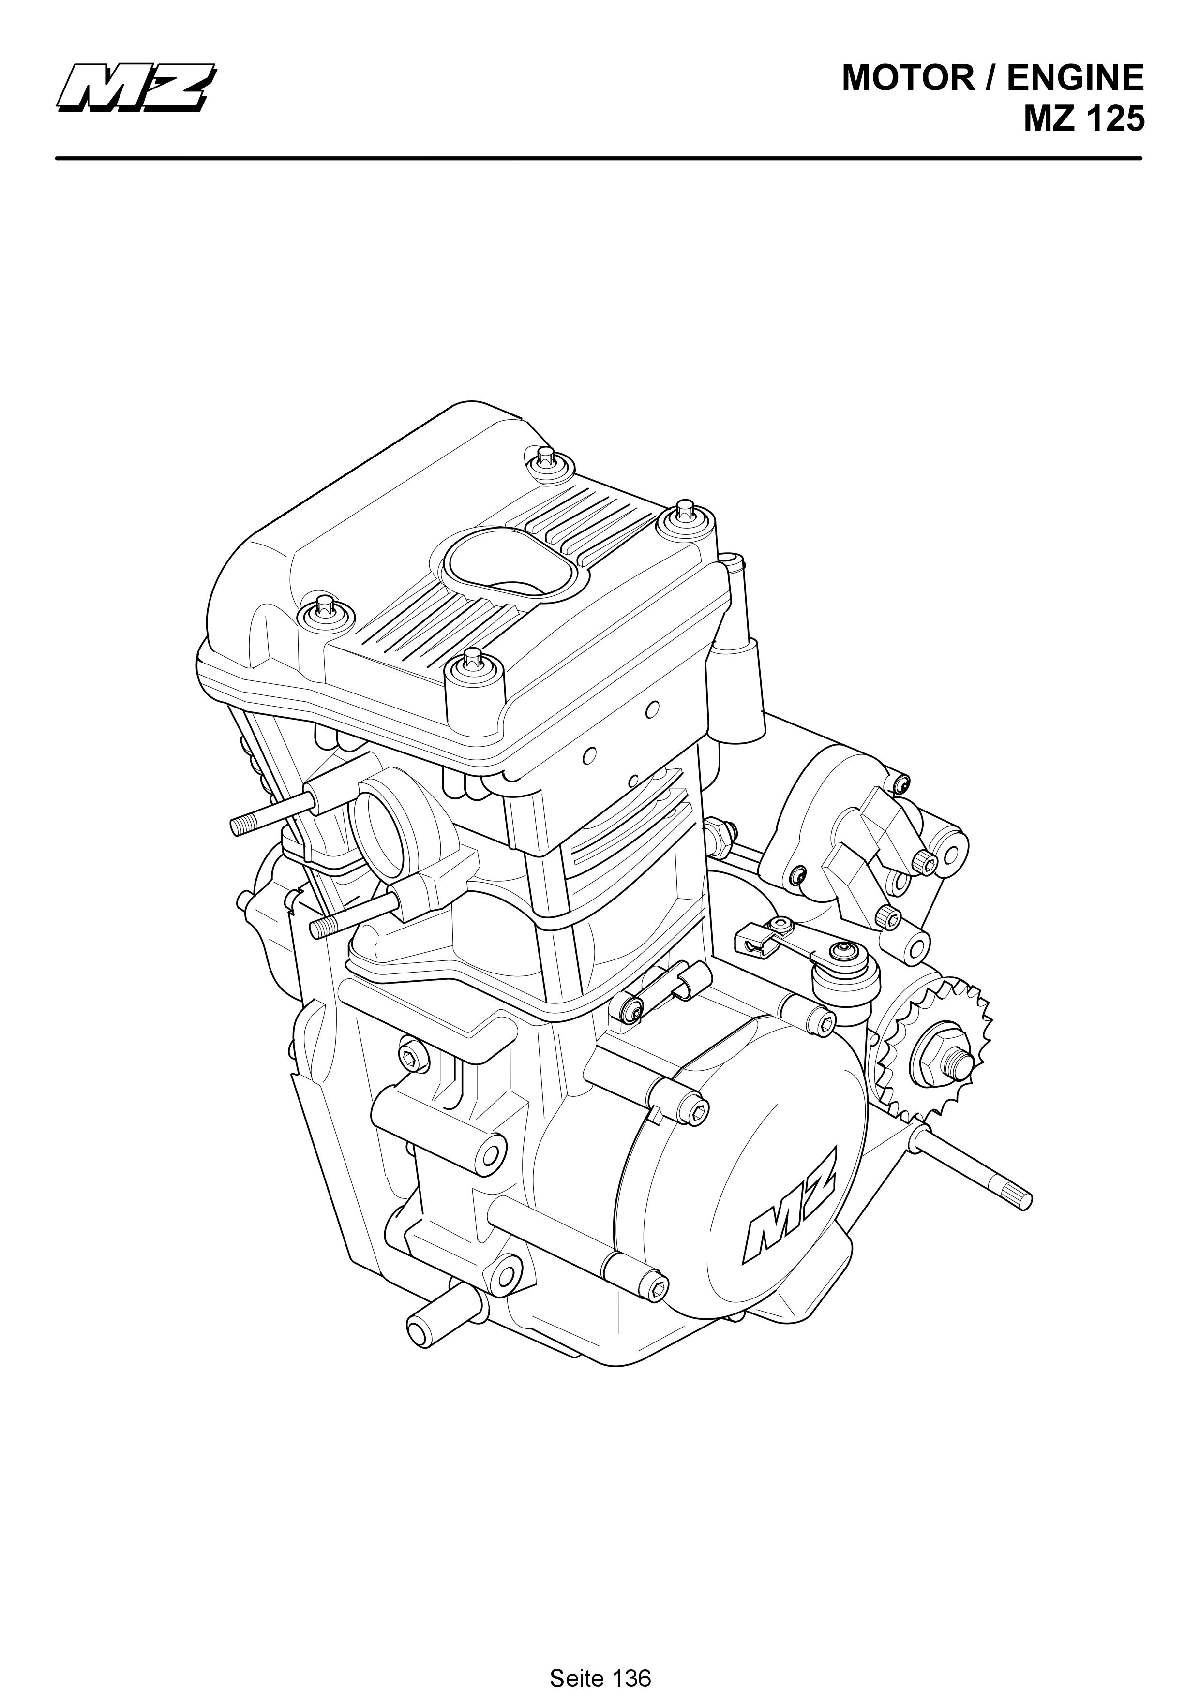 Katalog MZ 125 SX/SM - Ersatzmotor / spare engine - 130